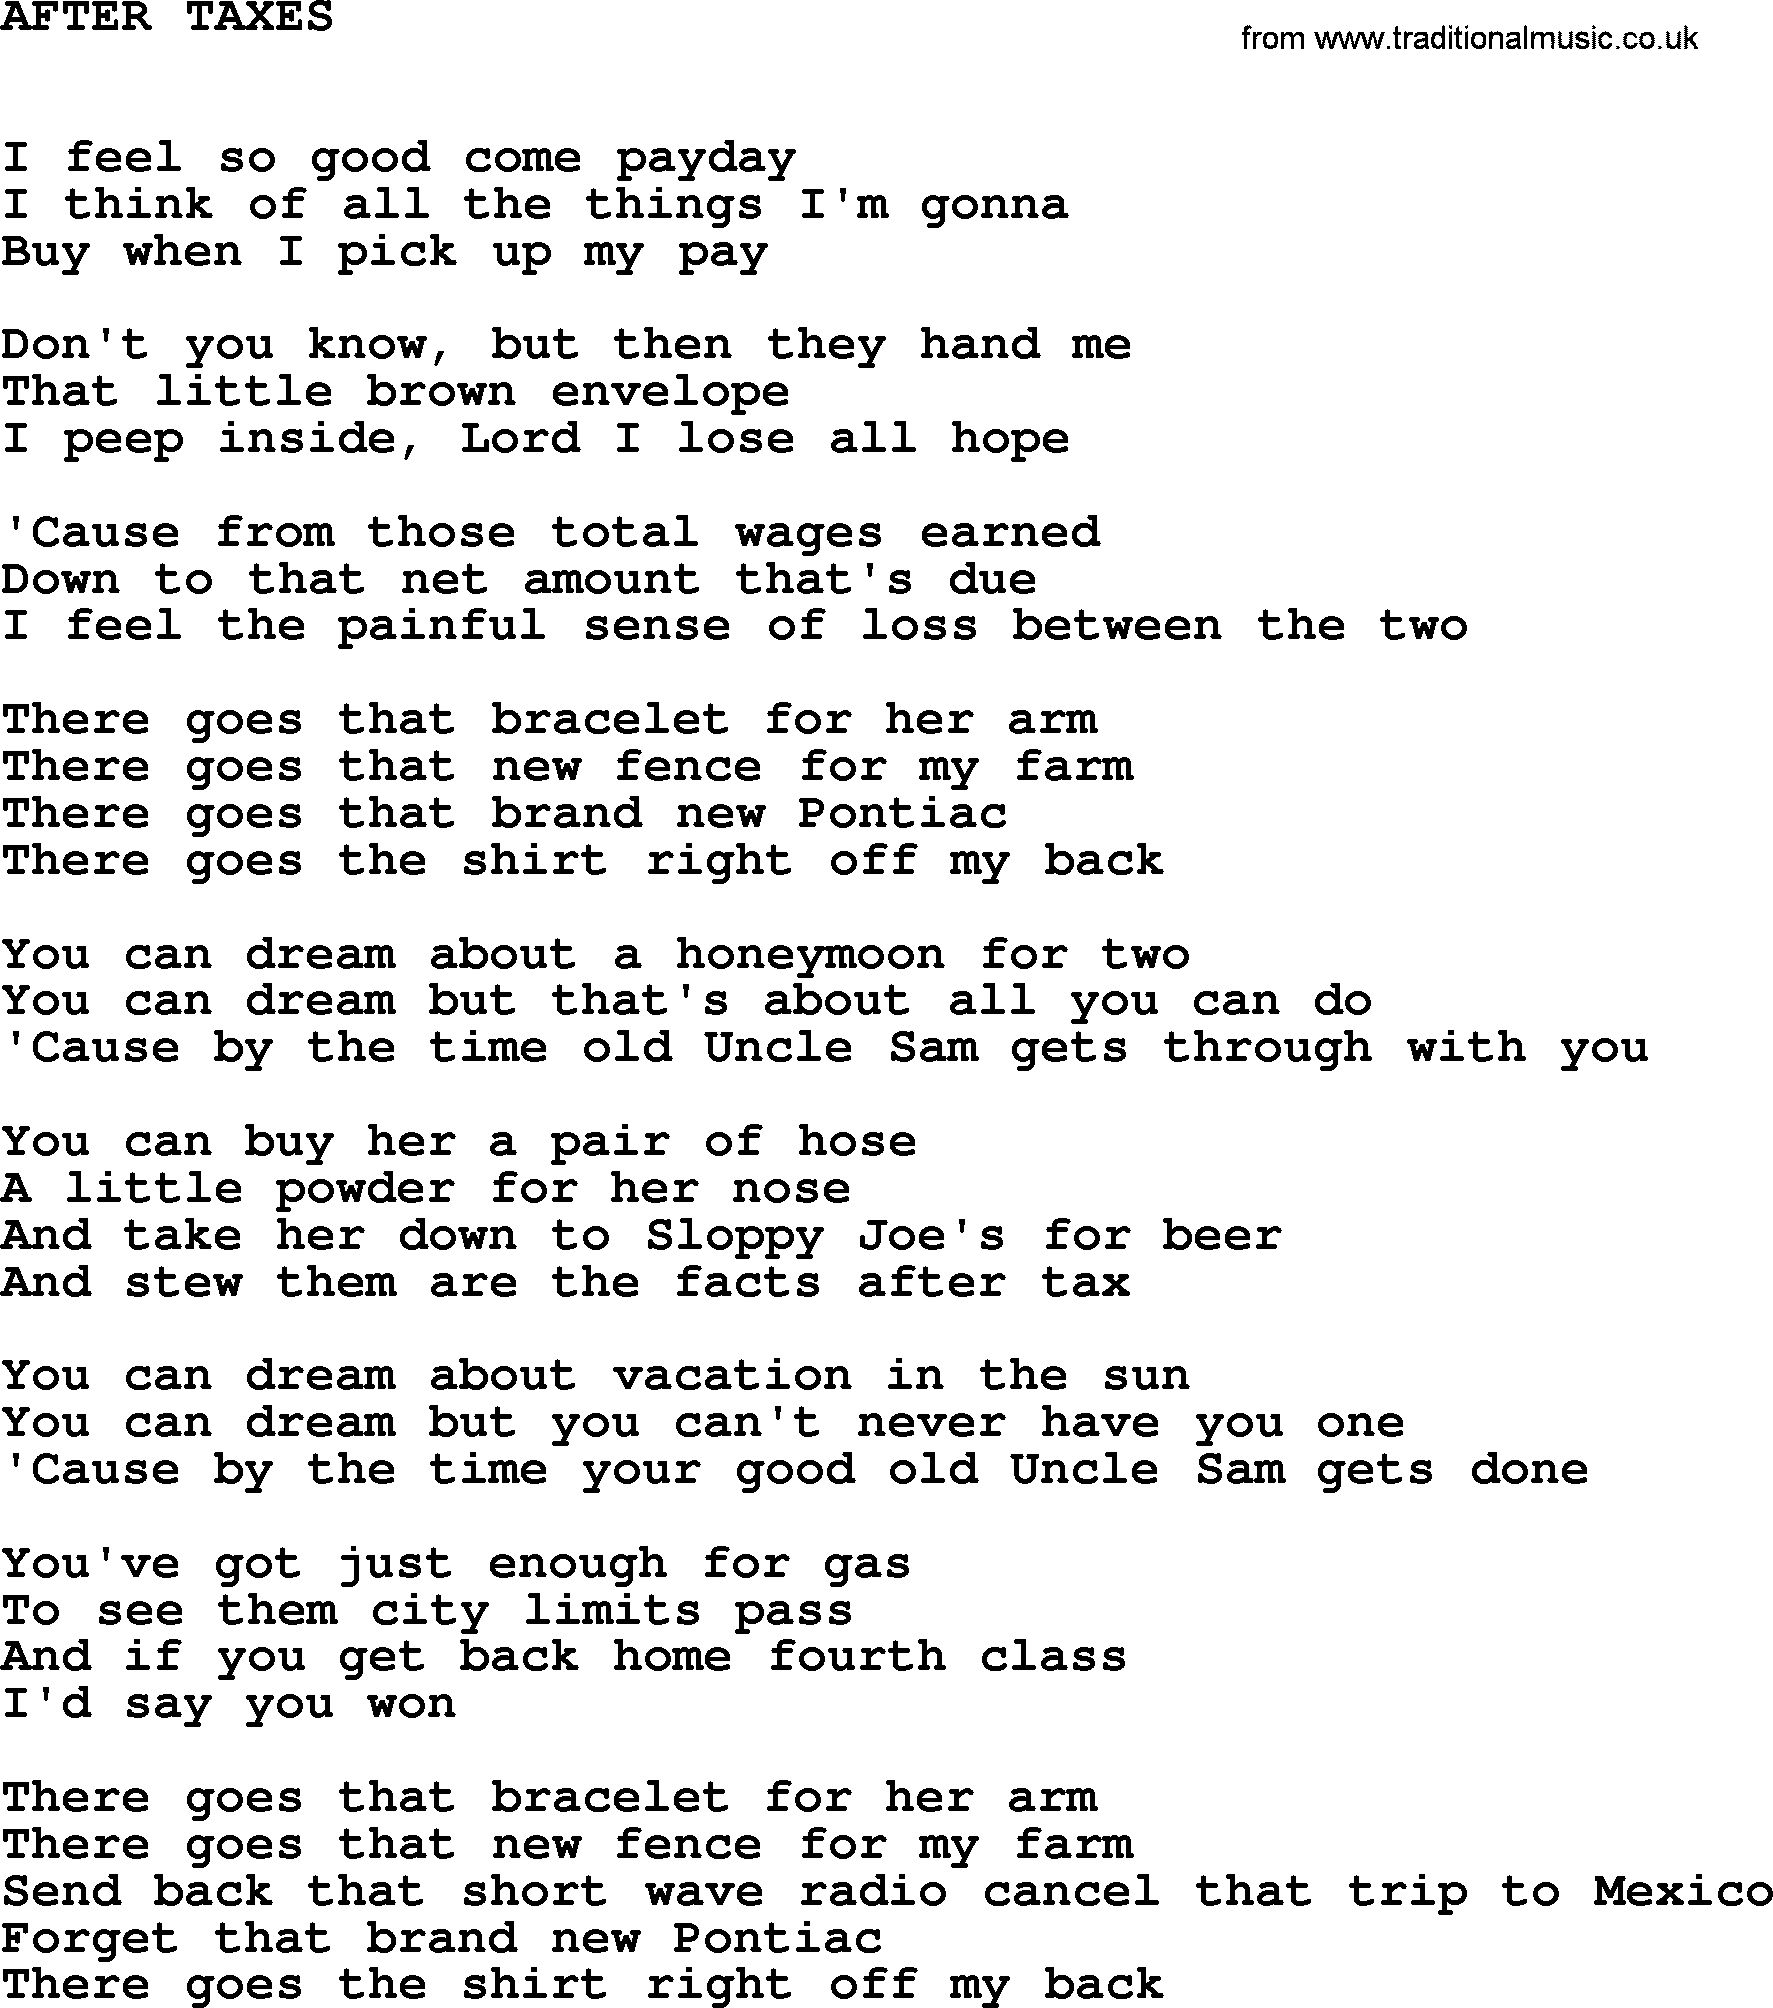 Johnny Cash song After Taxes.txt lyrics